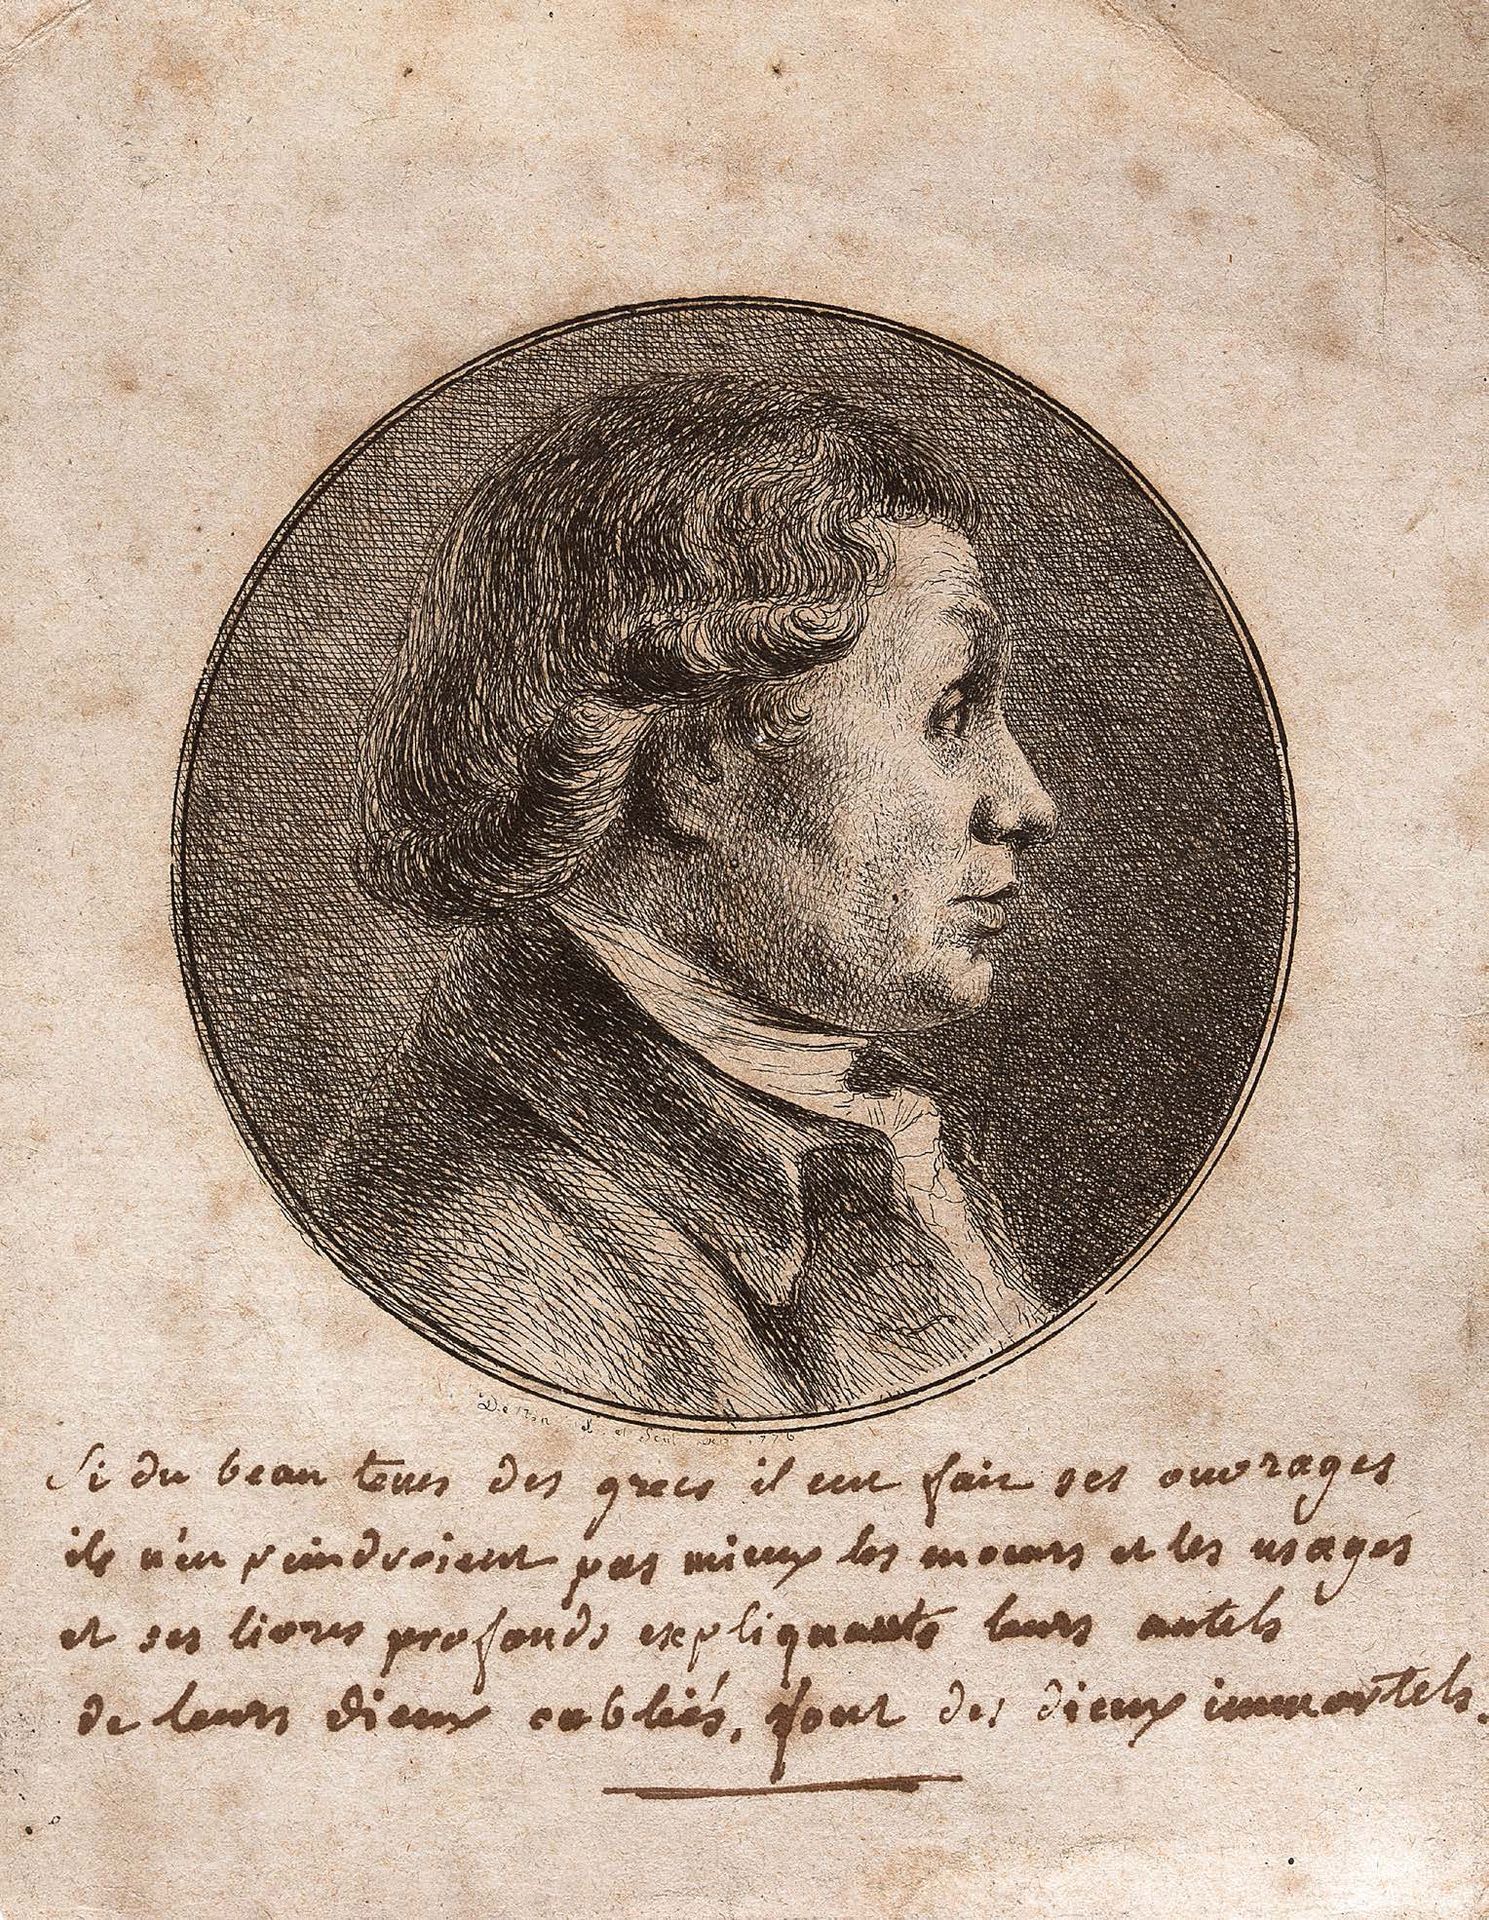 DOMINIQUE VIVANT DENON CHALON-SUR-SAÔNE, 1747 - 1825, PARIS 
Portrait d' homme

&hellip;